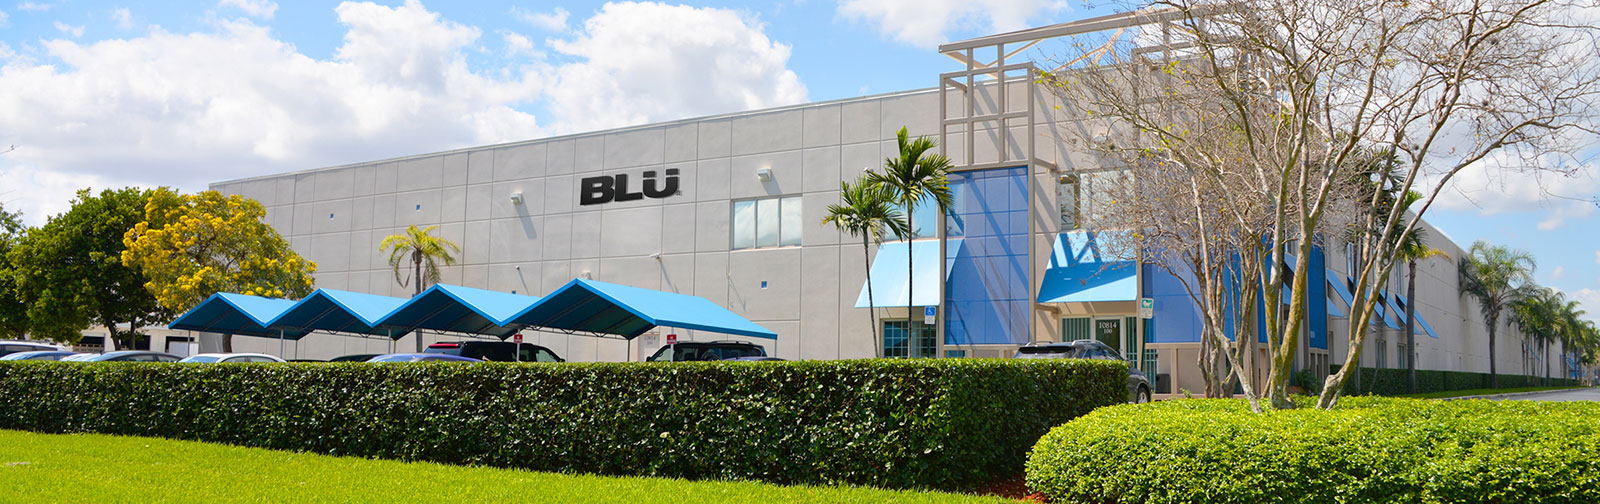 Blu er en produsent som er ukjent for oss her hjemme, men at de dropper Windows fra porteføljen sin er et symptom på noe større.